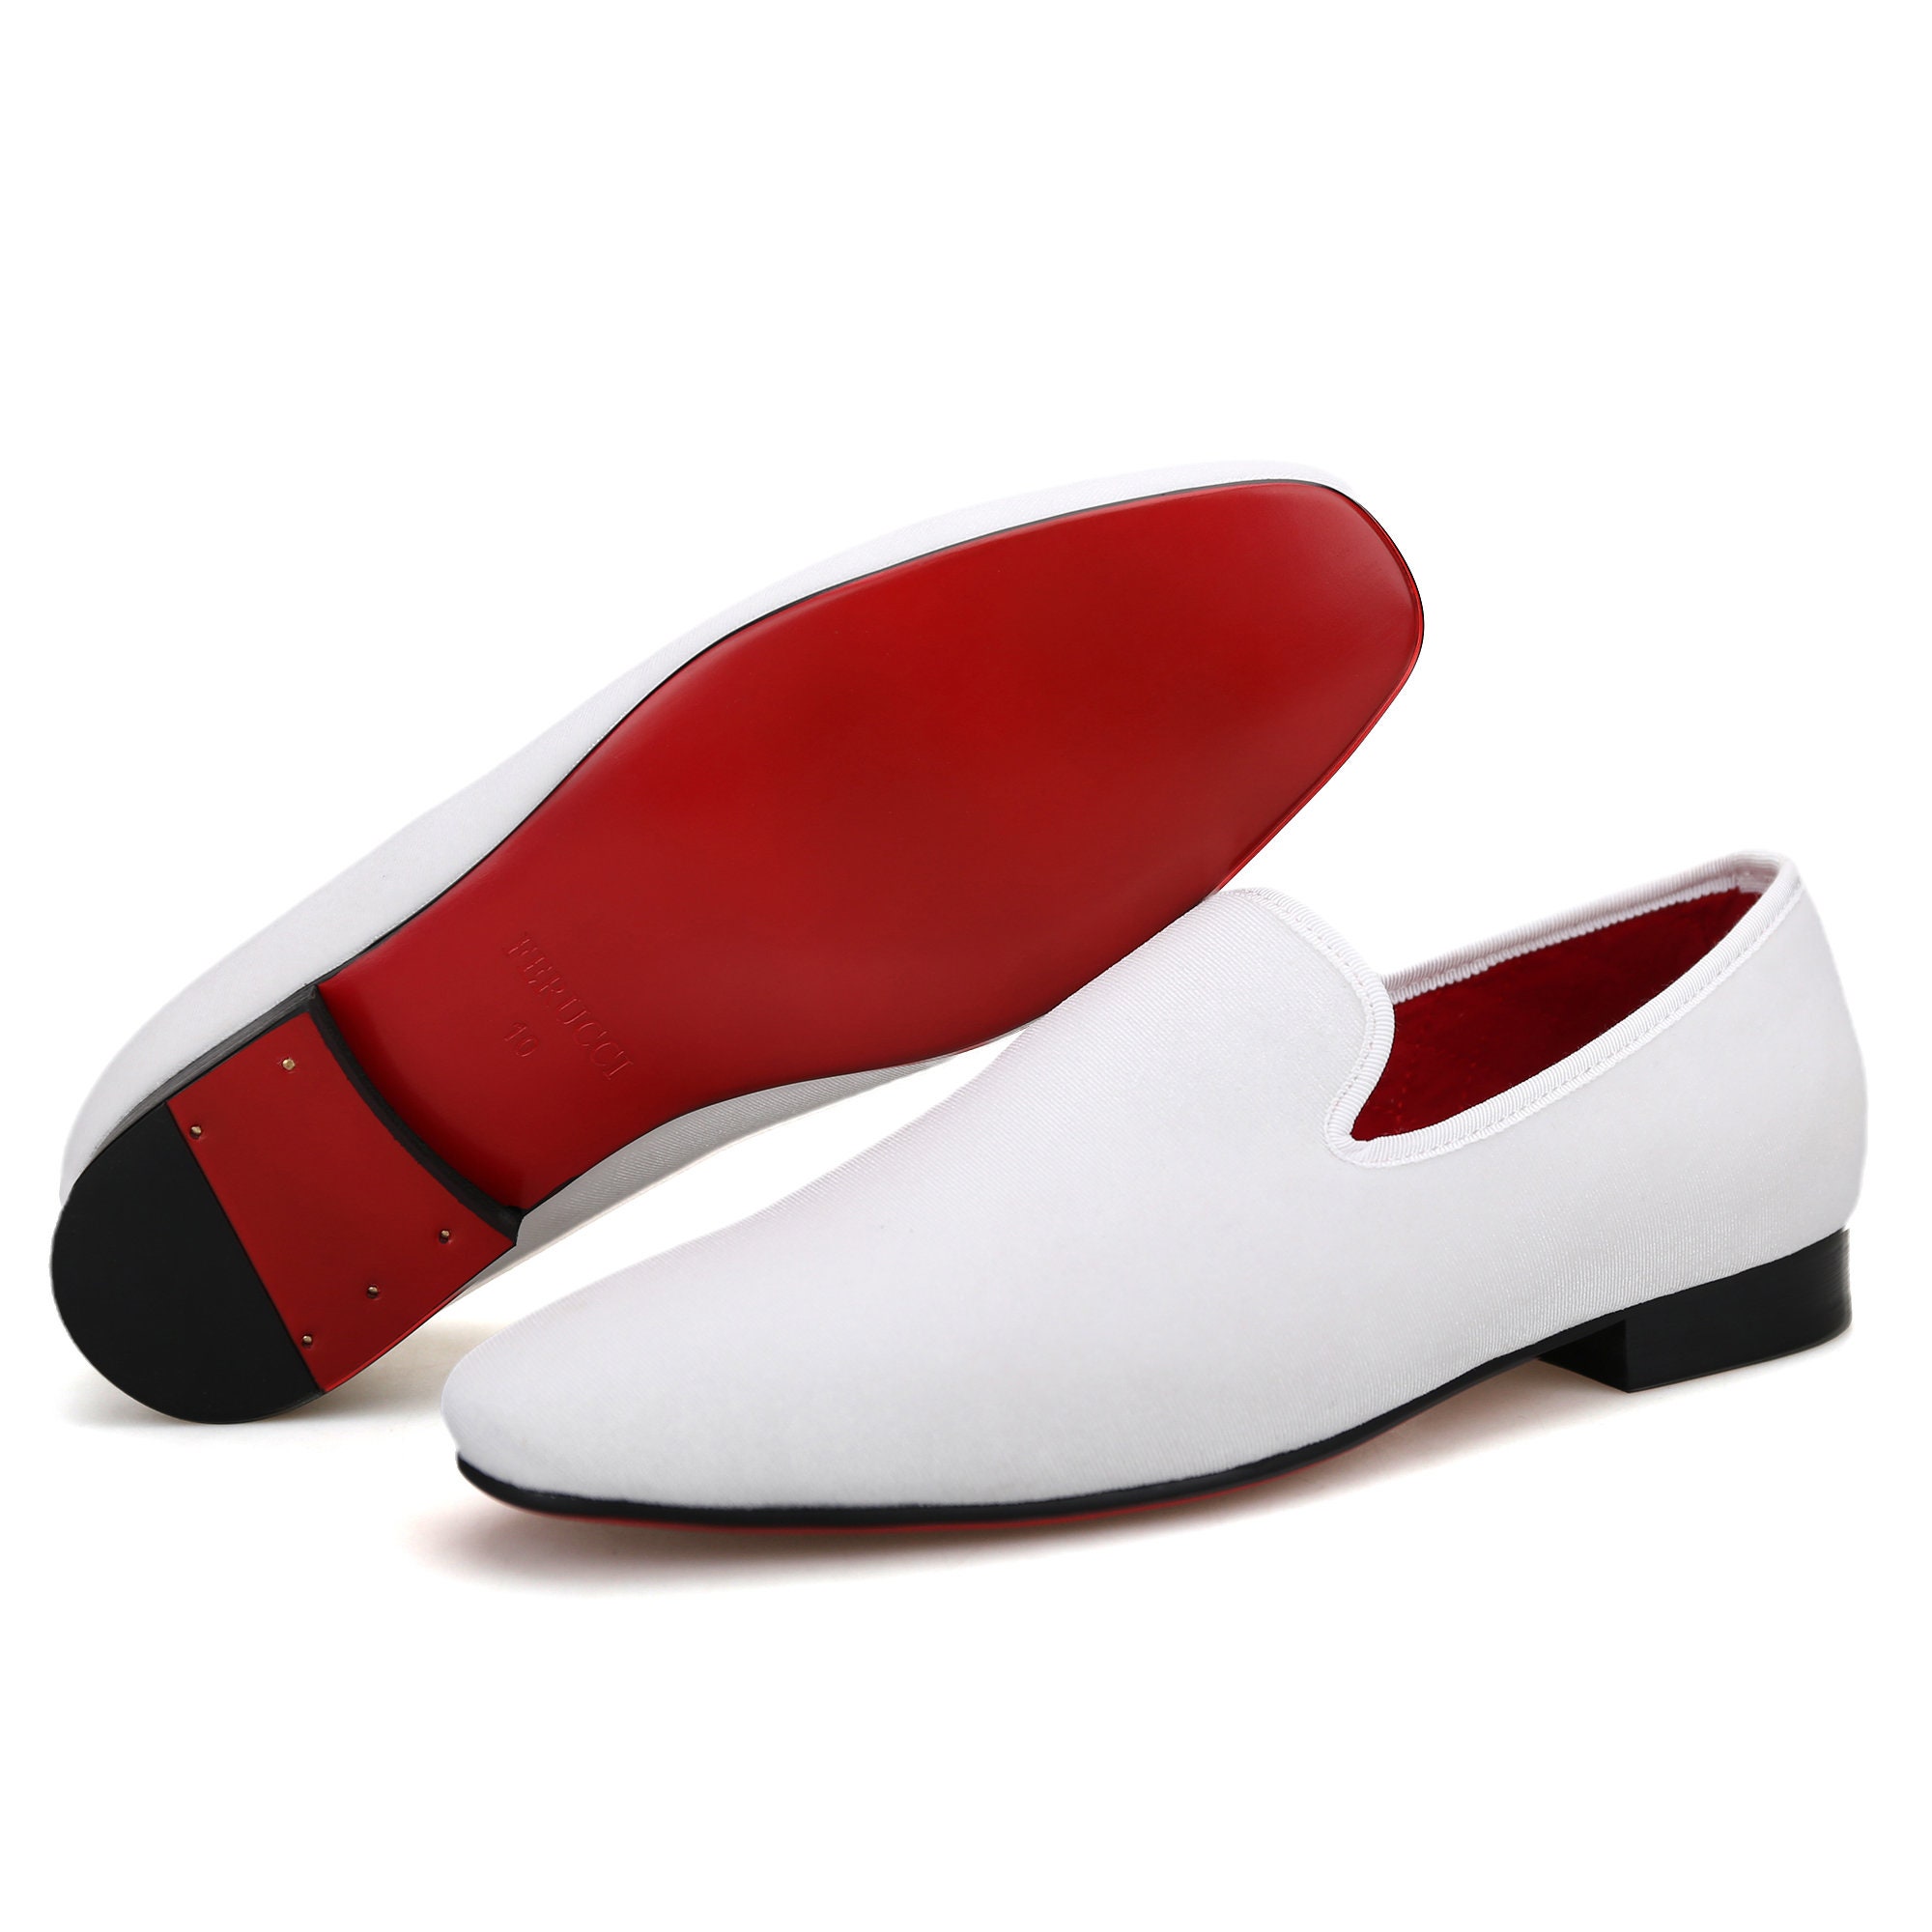 17 Replica red bottom shoes for men ideas